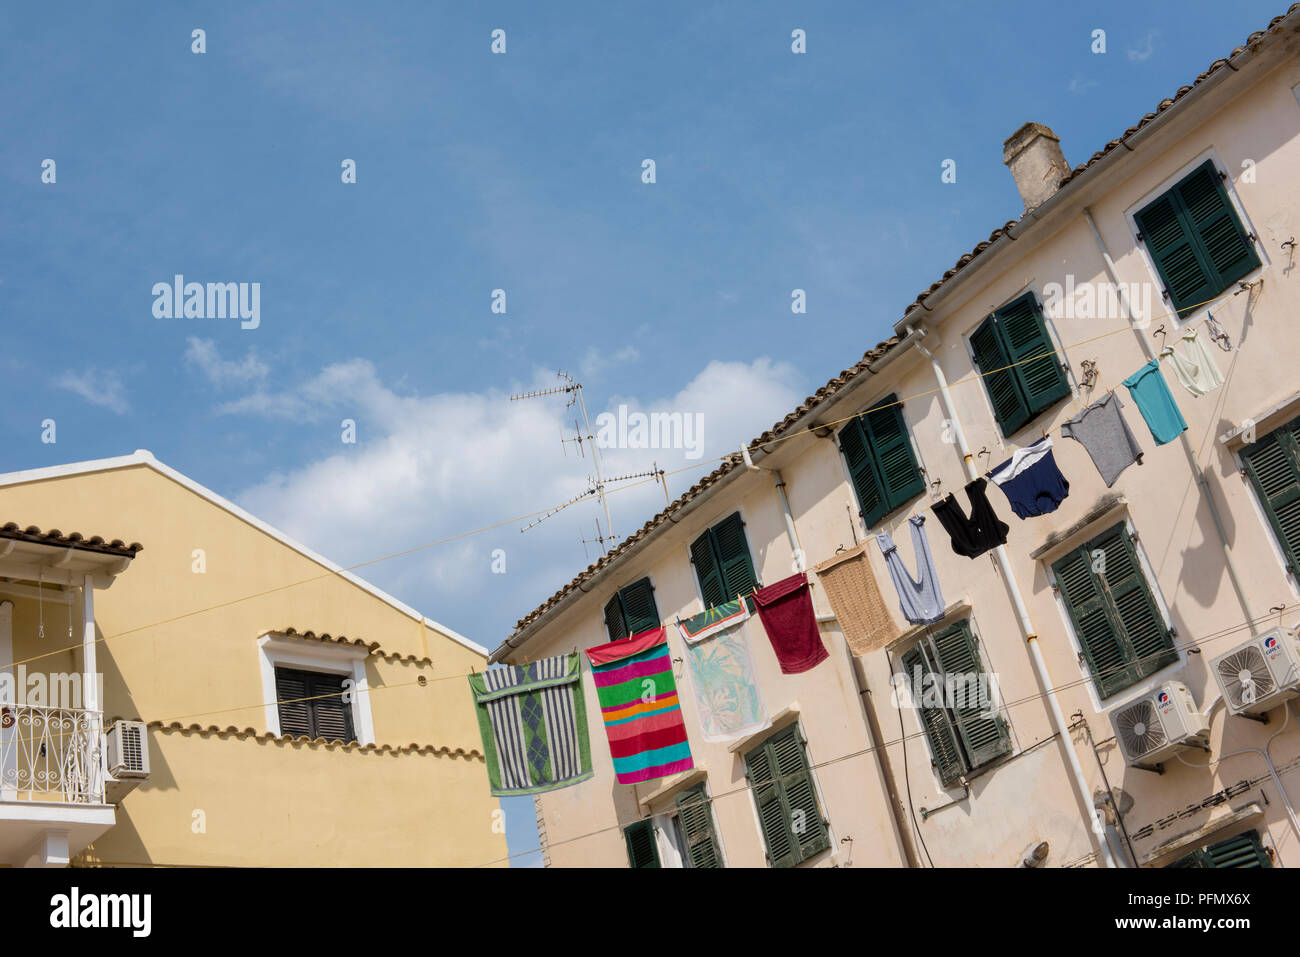 Eine Linie der frisch gewaschene bunte Wäsche aufhängen in der Sonne auf der griechischen isand von Korfu zu trocknen. Typisch griechische Landschaft. Stockfoto